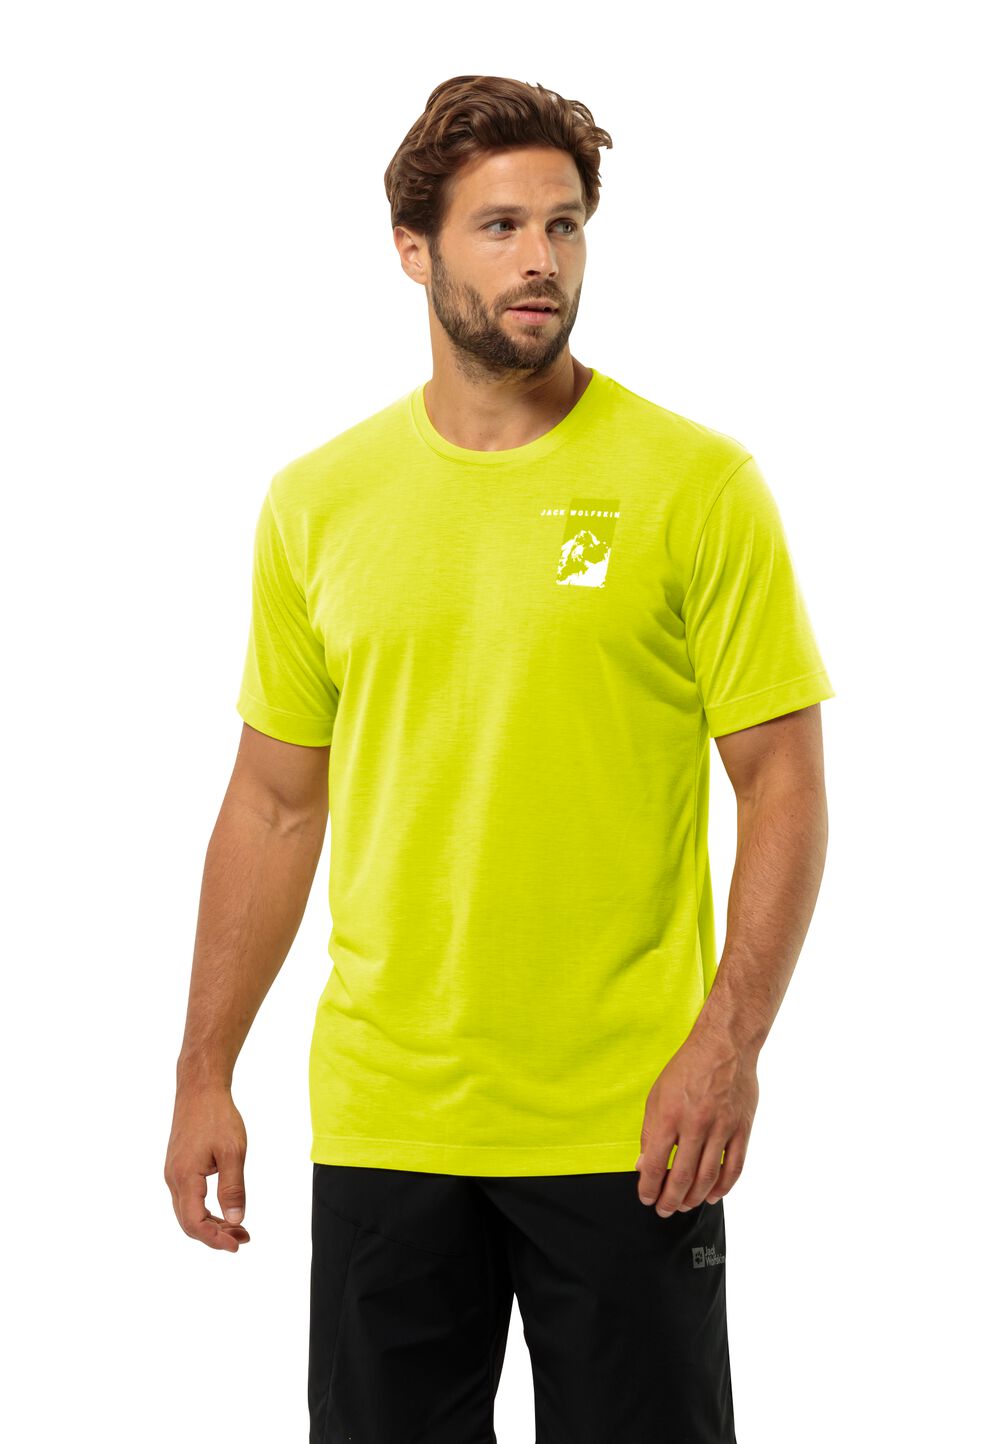 Jack Wolfskin Vonnan S S Graphic T-Shirt Men Functioneel shirt Heren M oranje firefly